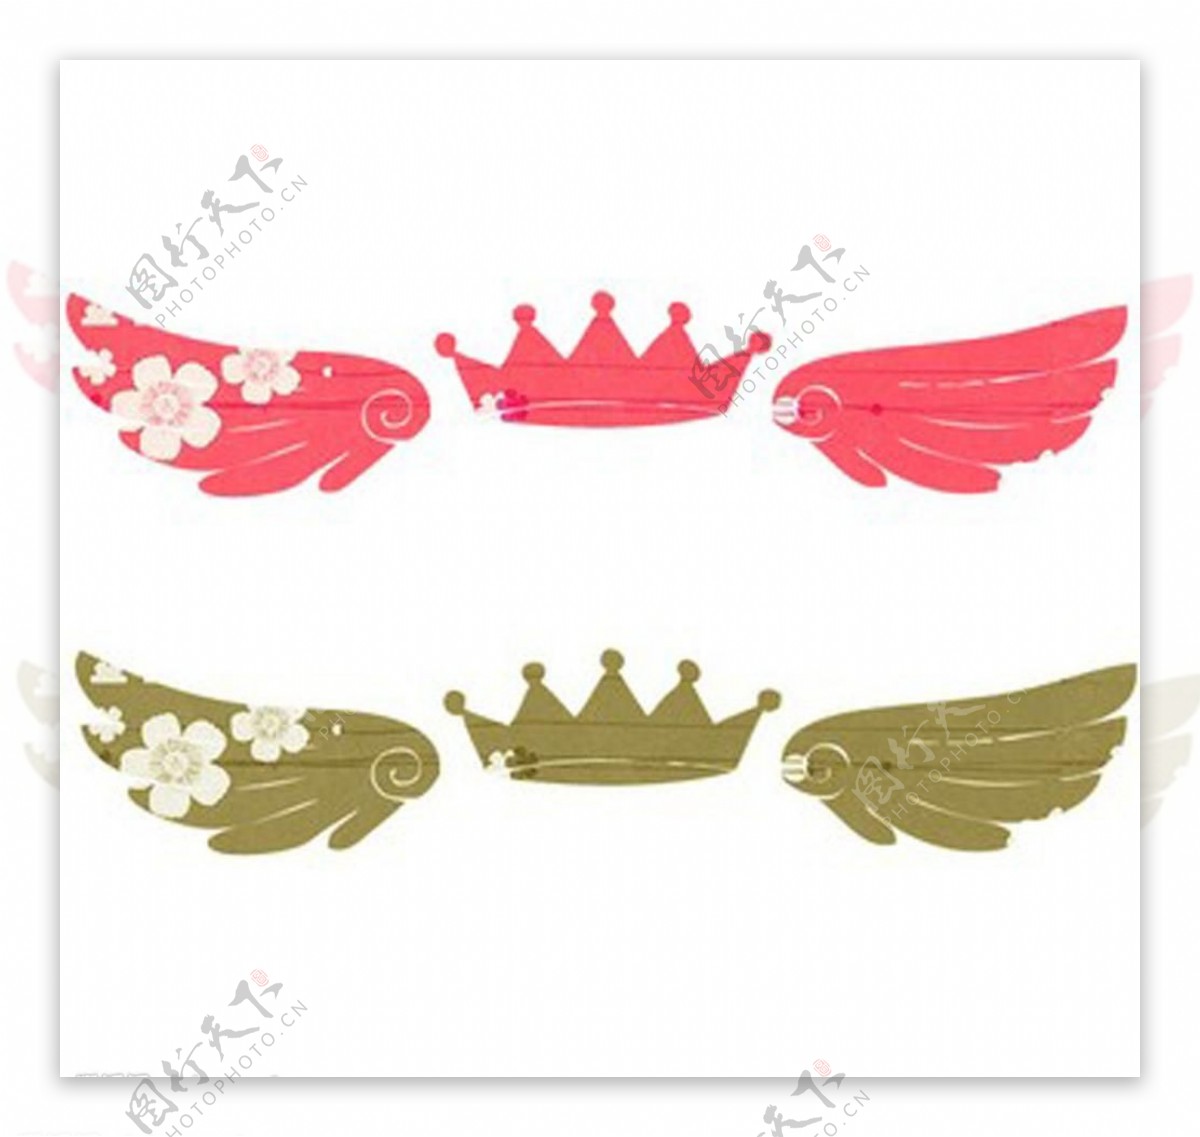 皇冠翅膀图片